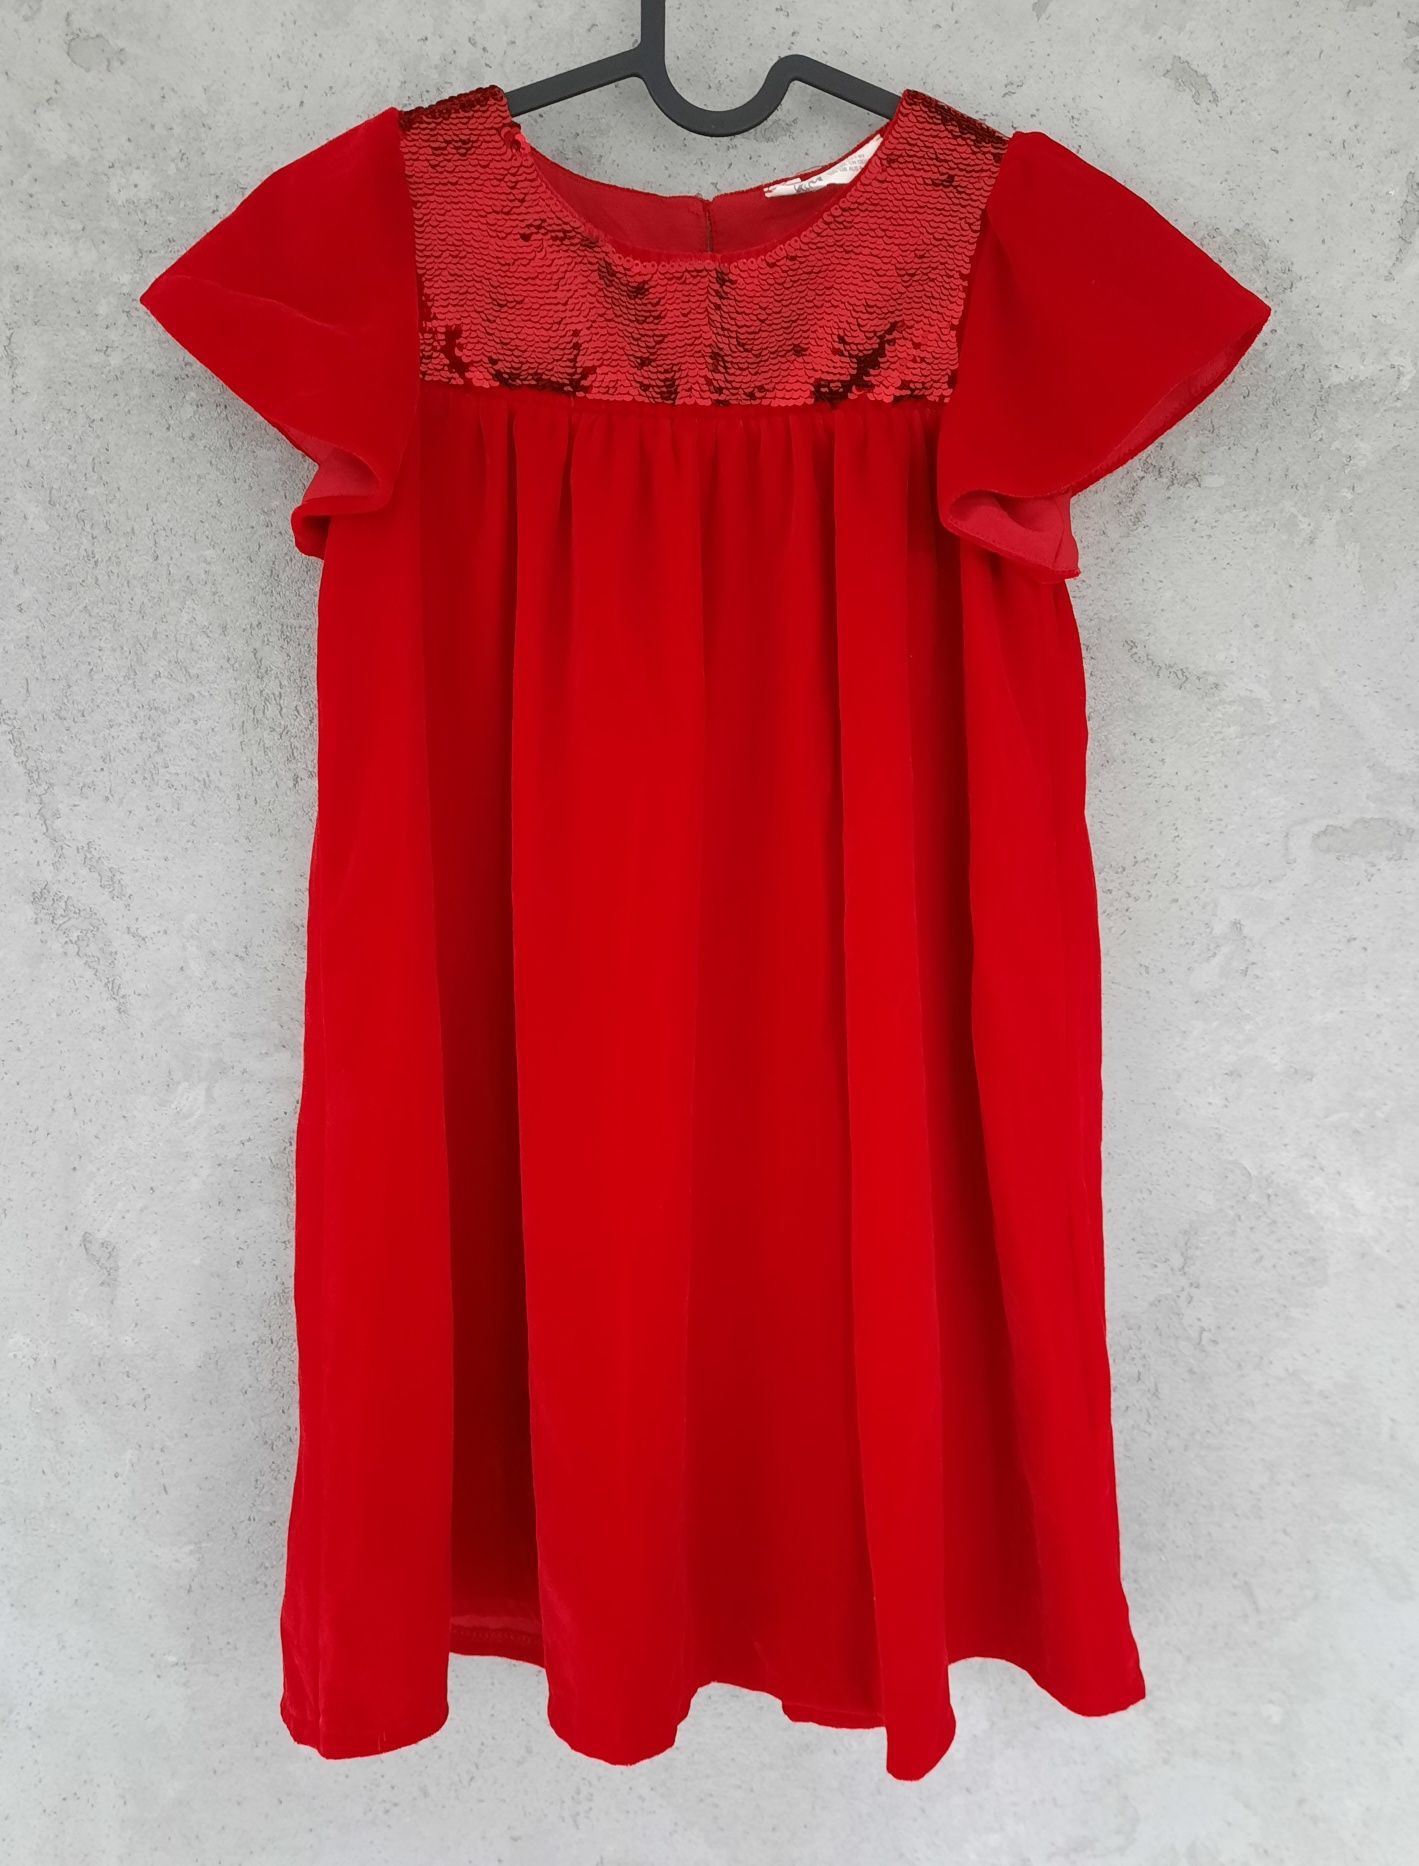 czerwona sukienka HM 128 aksamit cekiny świąteczna święta